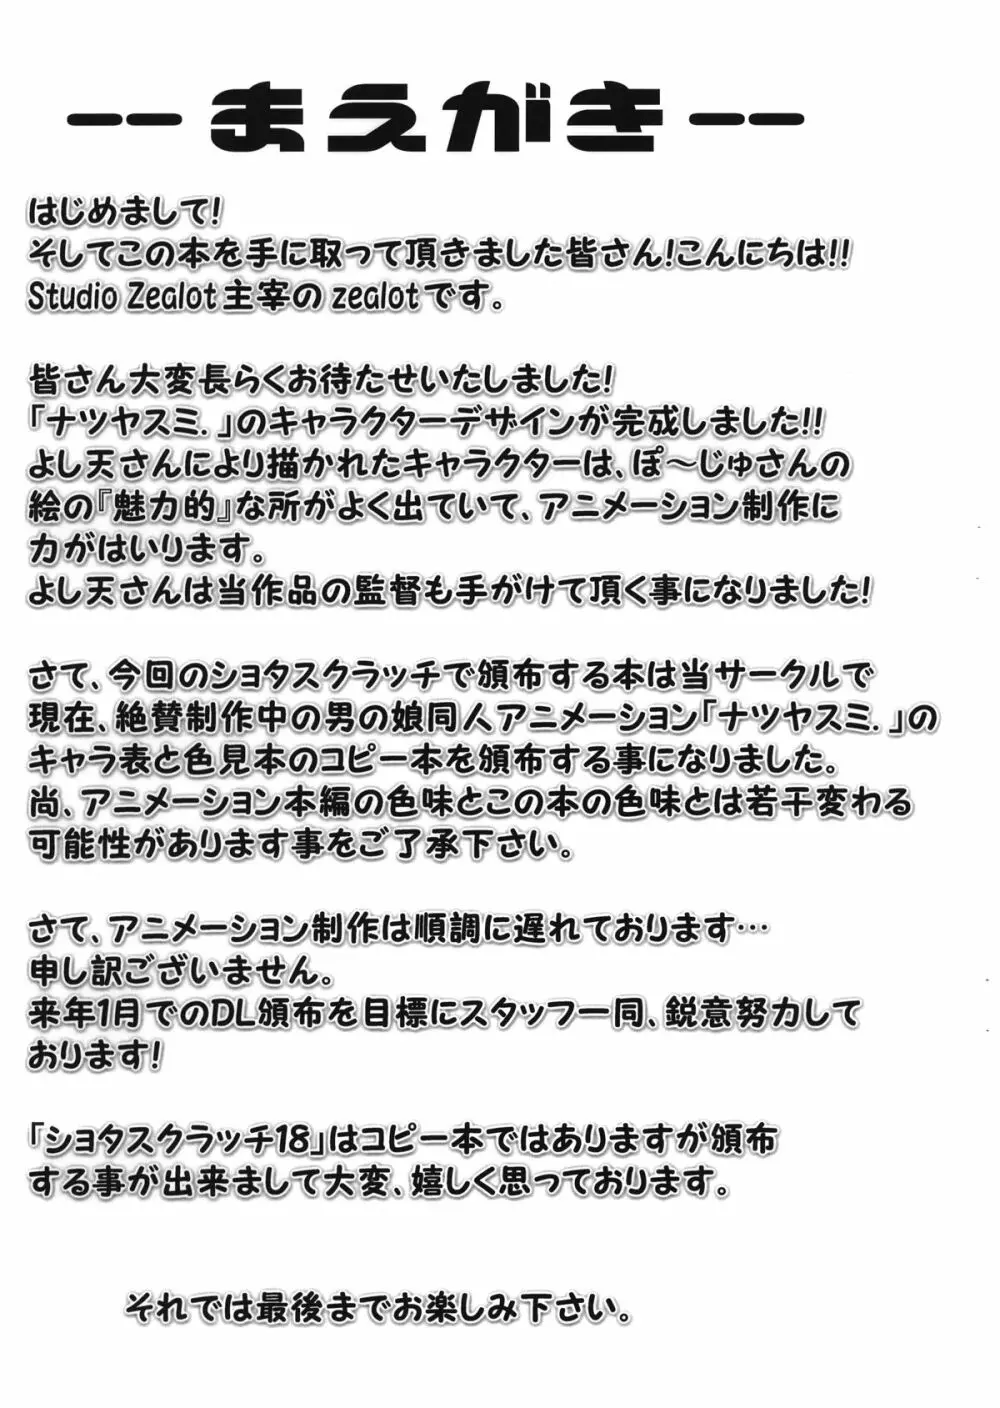 ナツヤスミ.」 キャラデ集 5 Oct. 2012 Ver. 3ページ